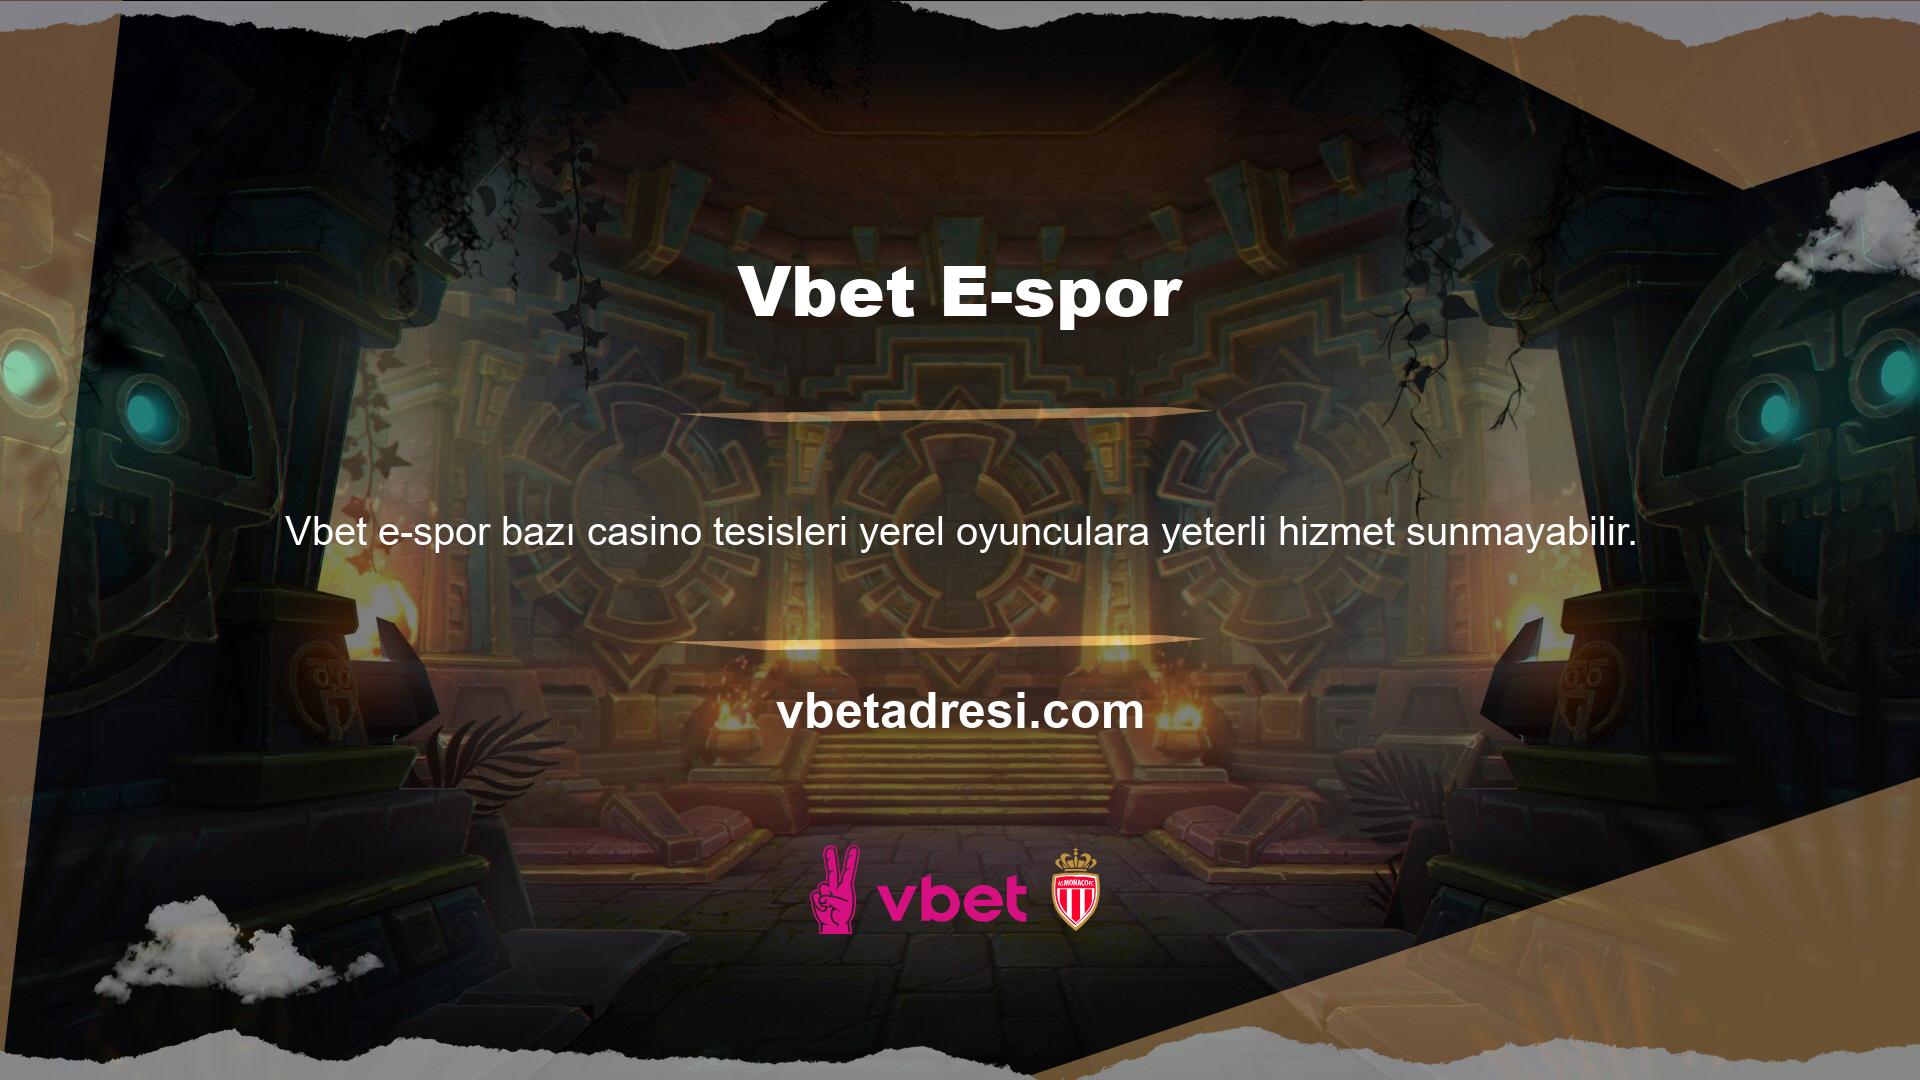 Diğer casino türleri gibi Vbet online casino sitesi de kullanıcılarına oldukça iyi ve karlı hizmetler sunmaktadır